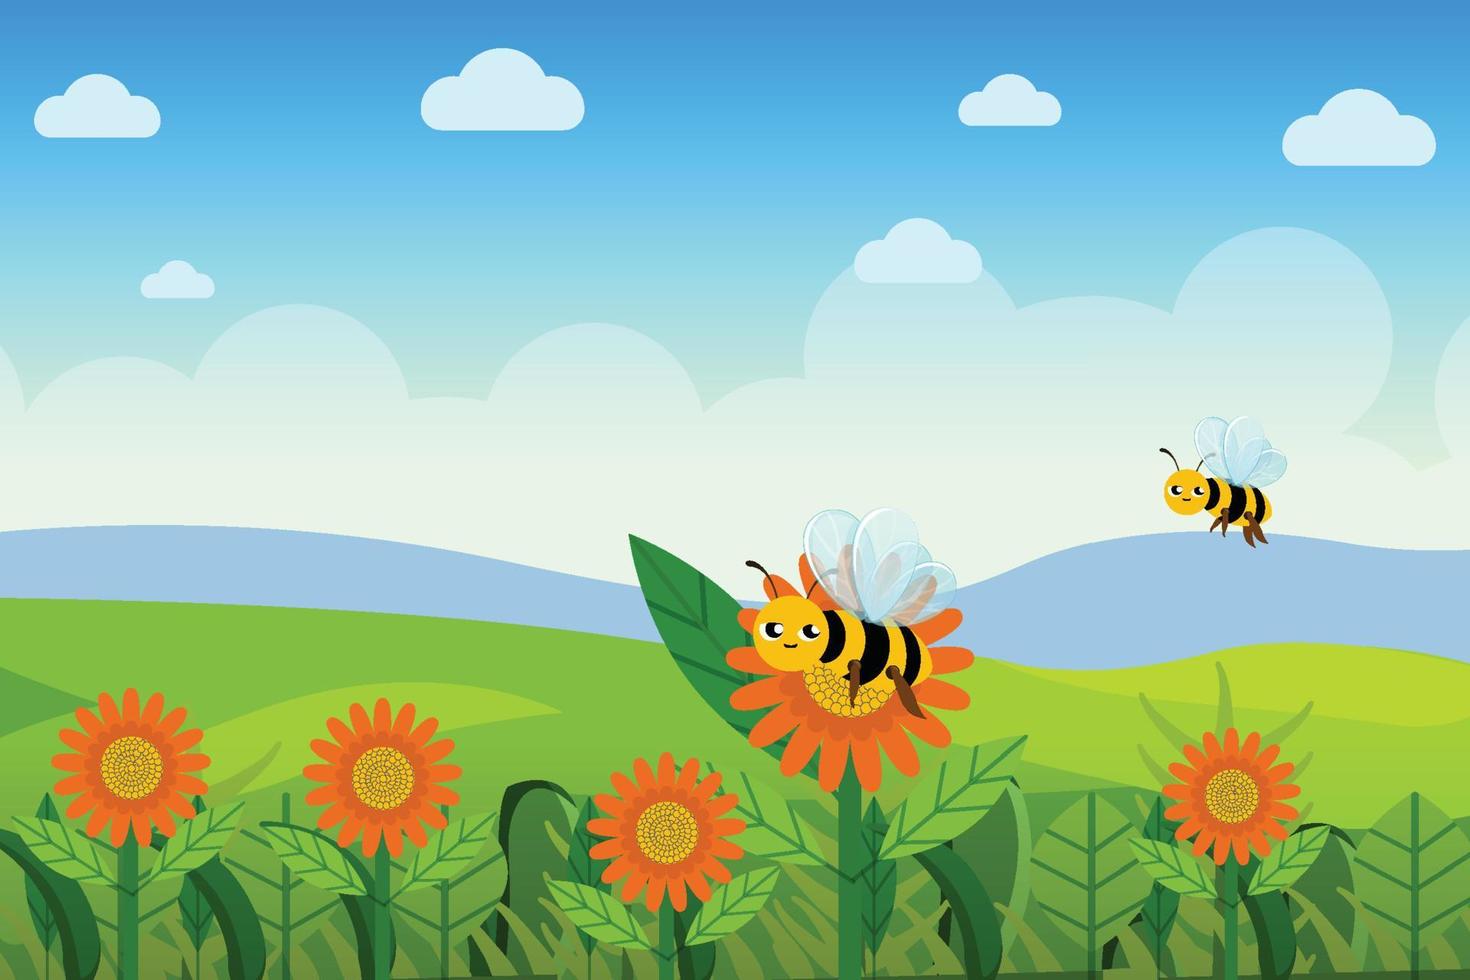 Bienen fliegen über den Blumengarten und sammeln Honig aus dem Pflanzenvektorkonzept. süße lächelnde bienen fliegen und sammeln nektar aus dem gänseblümchenblumenvektor. grönland mit blumengarten und blauem himmel. vektor